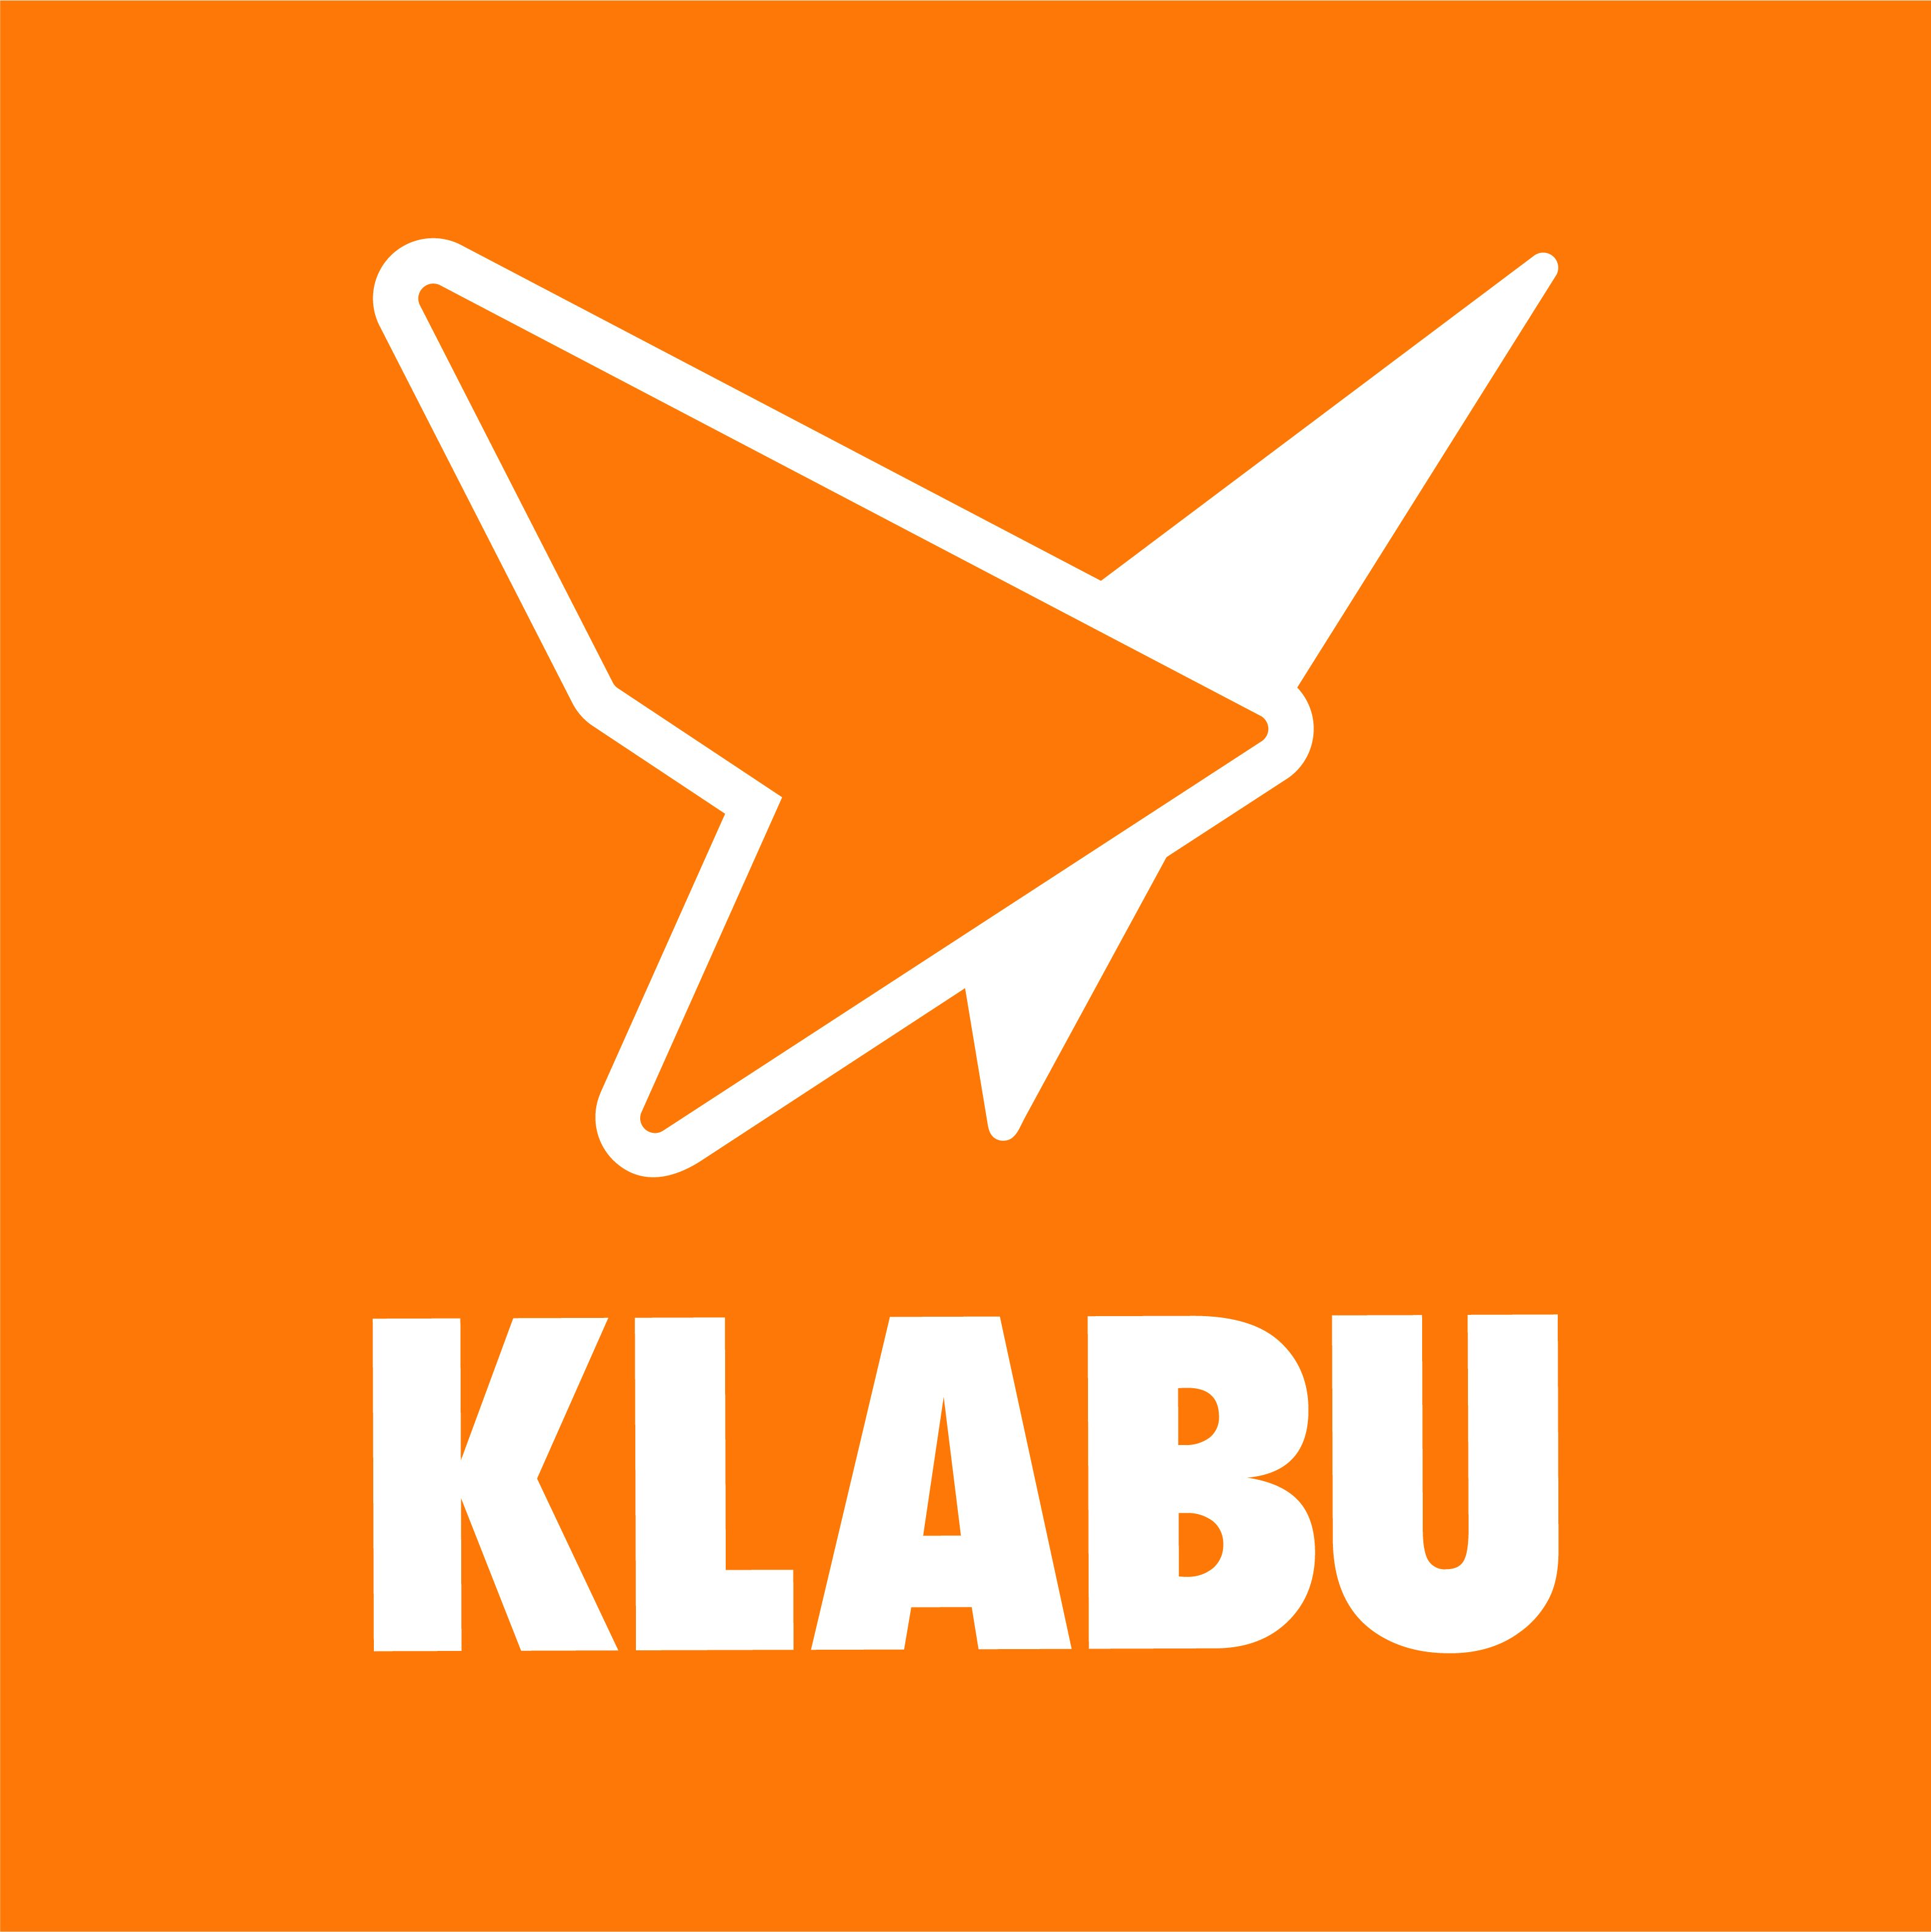 KLABU butterfly logo